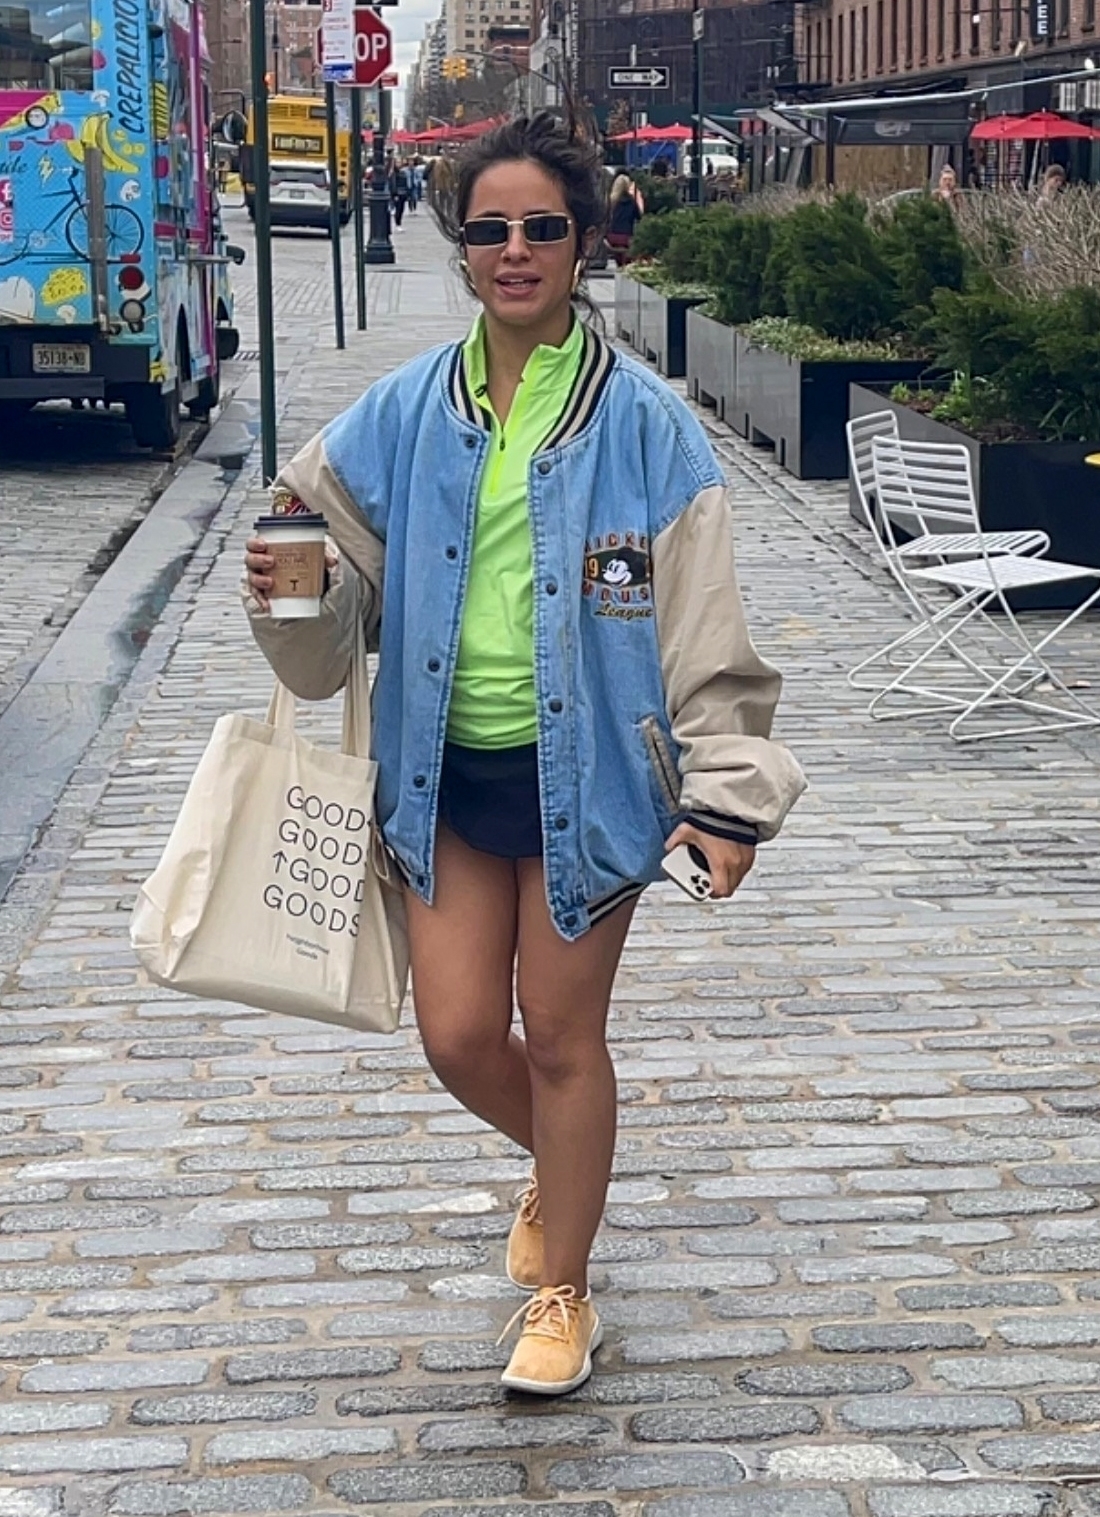 Camila Cabello fue fotografiada en un paseo comercial de Nueva York a donde había ido a comprar un café para llevar. Lució un look colorido: short azul, remera verde, campera de jean, zapatillas color mostaza. Completó su outfit con lentes de sol y una bolsa estampada de tela